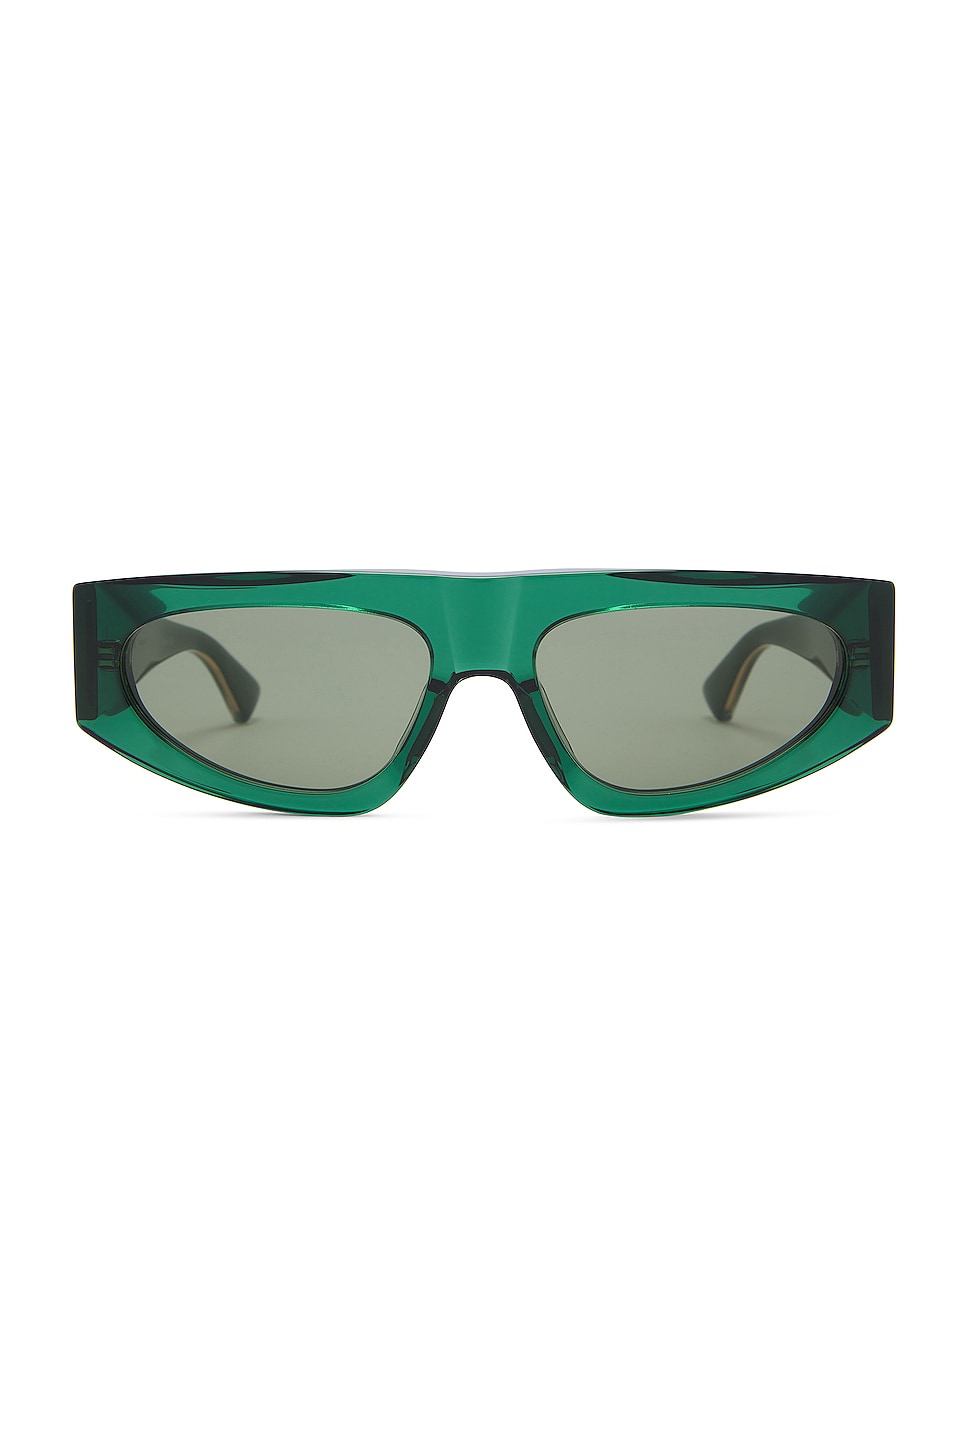 Nude Triangle Sunglasses in Green